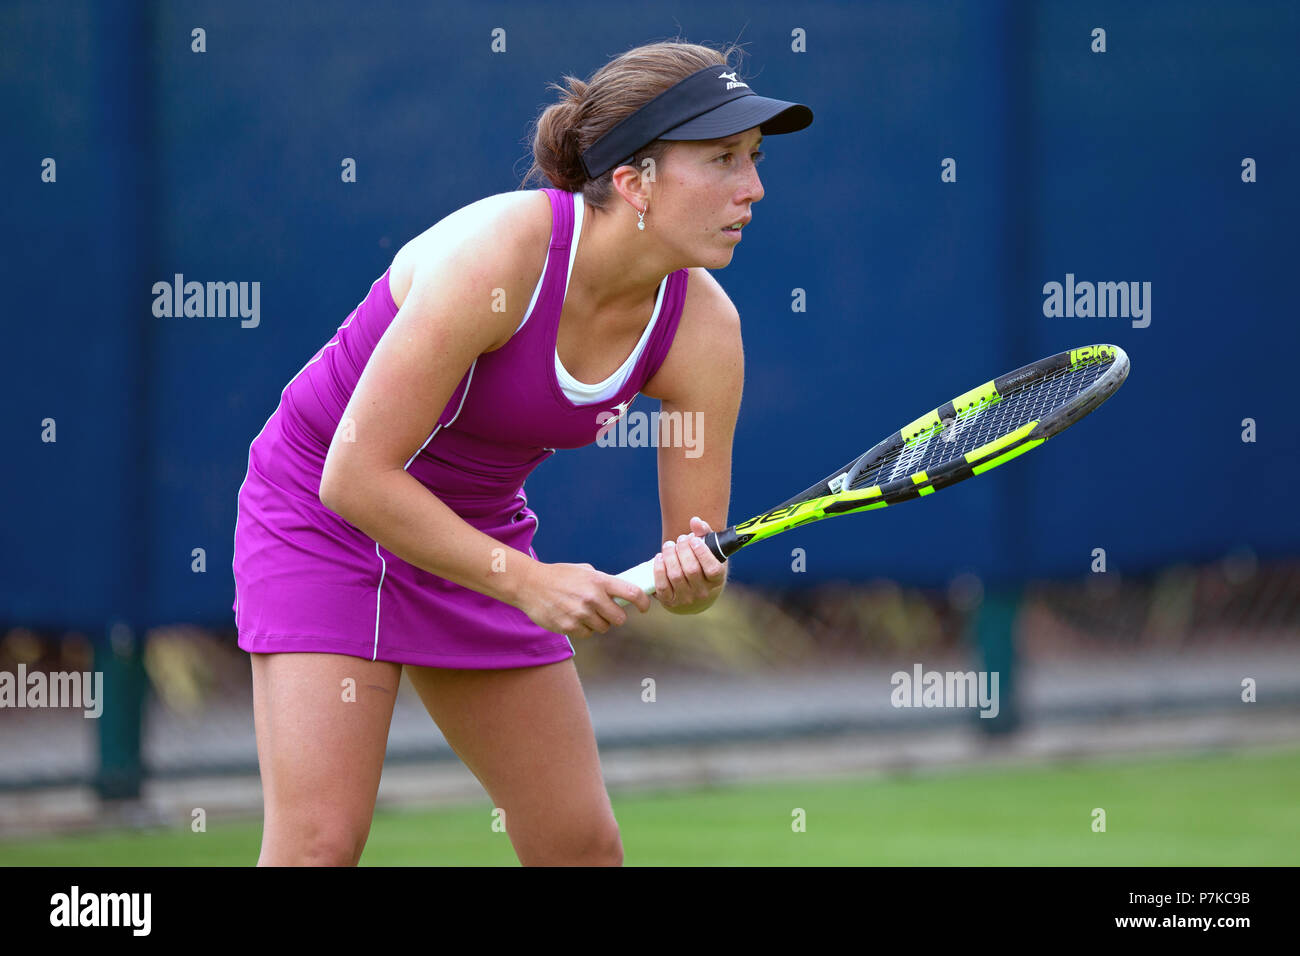 Joueur de tennis professionnel Irina Falconi attend un service au tennis en position d'attente lors d'un match en 2018. Banque D'Images